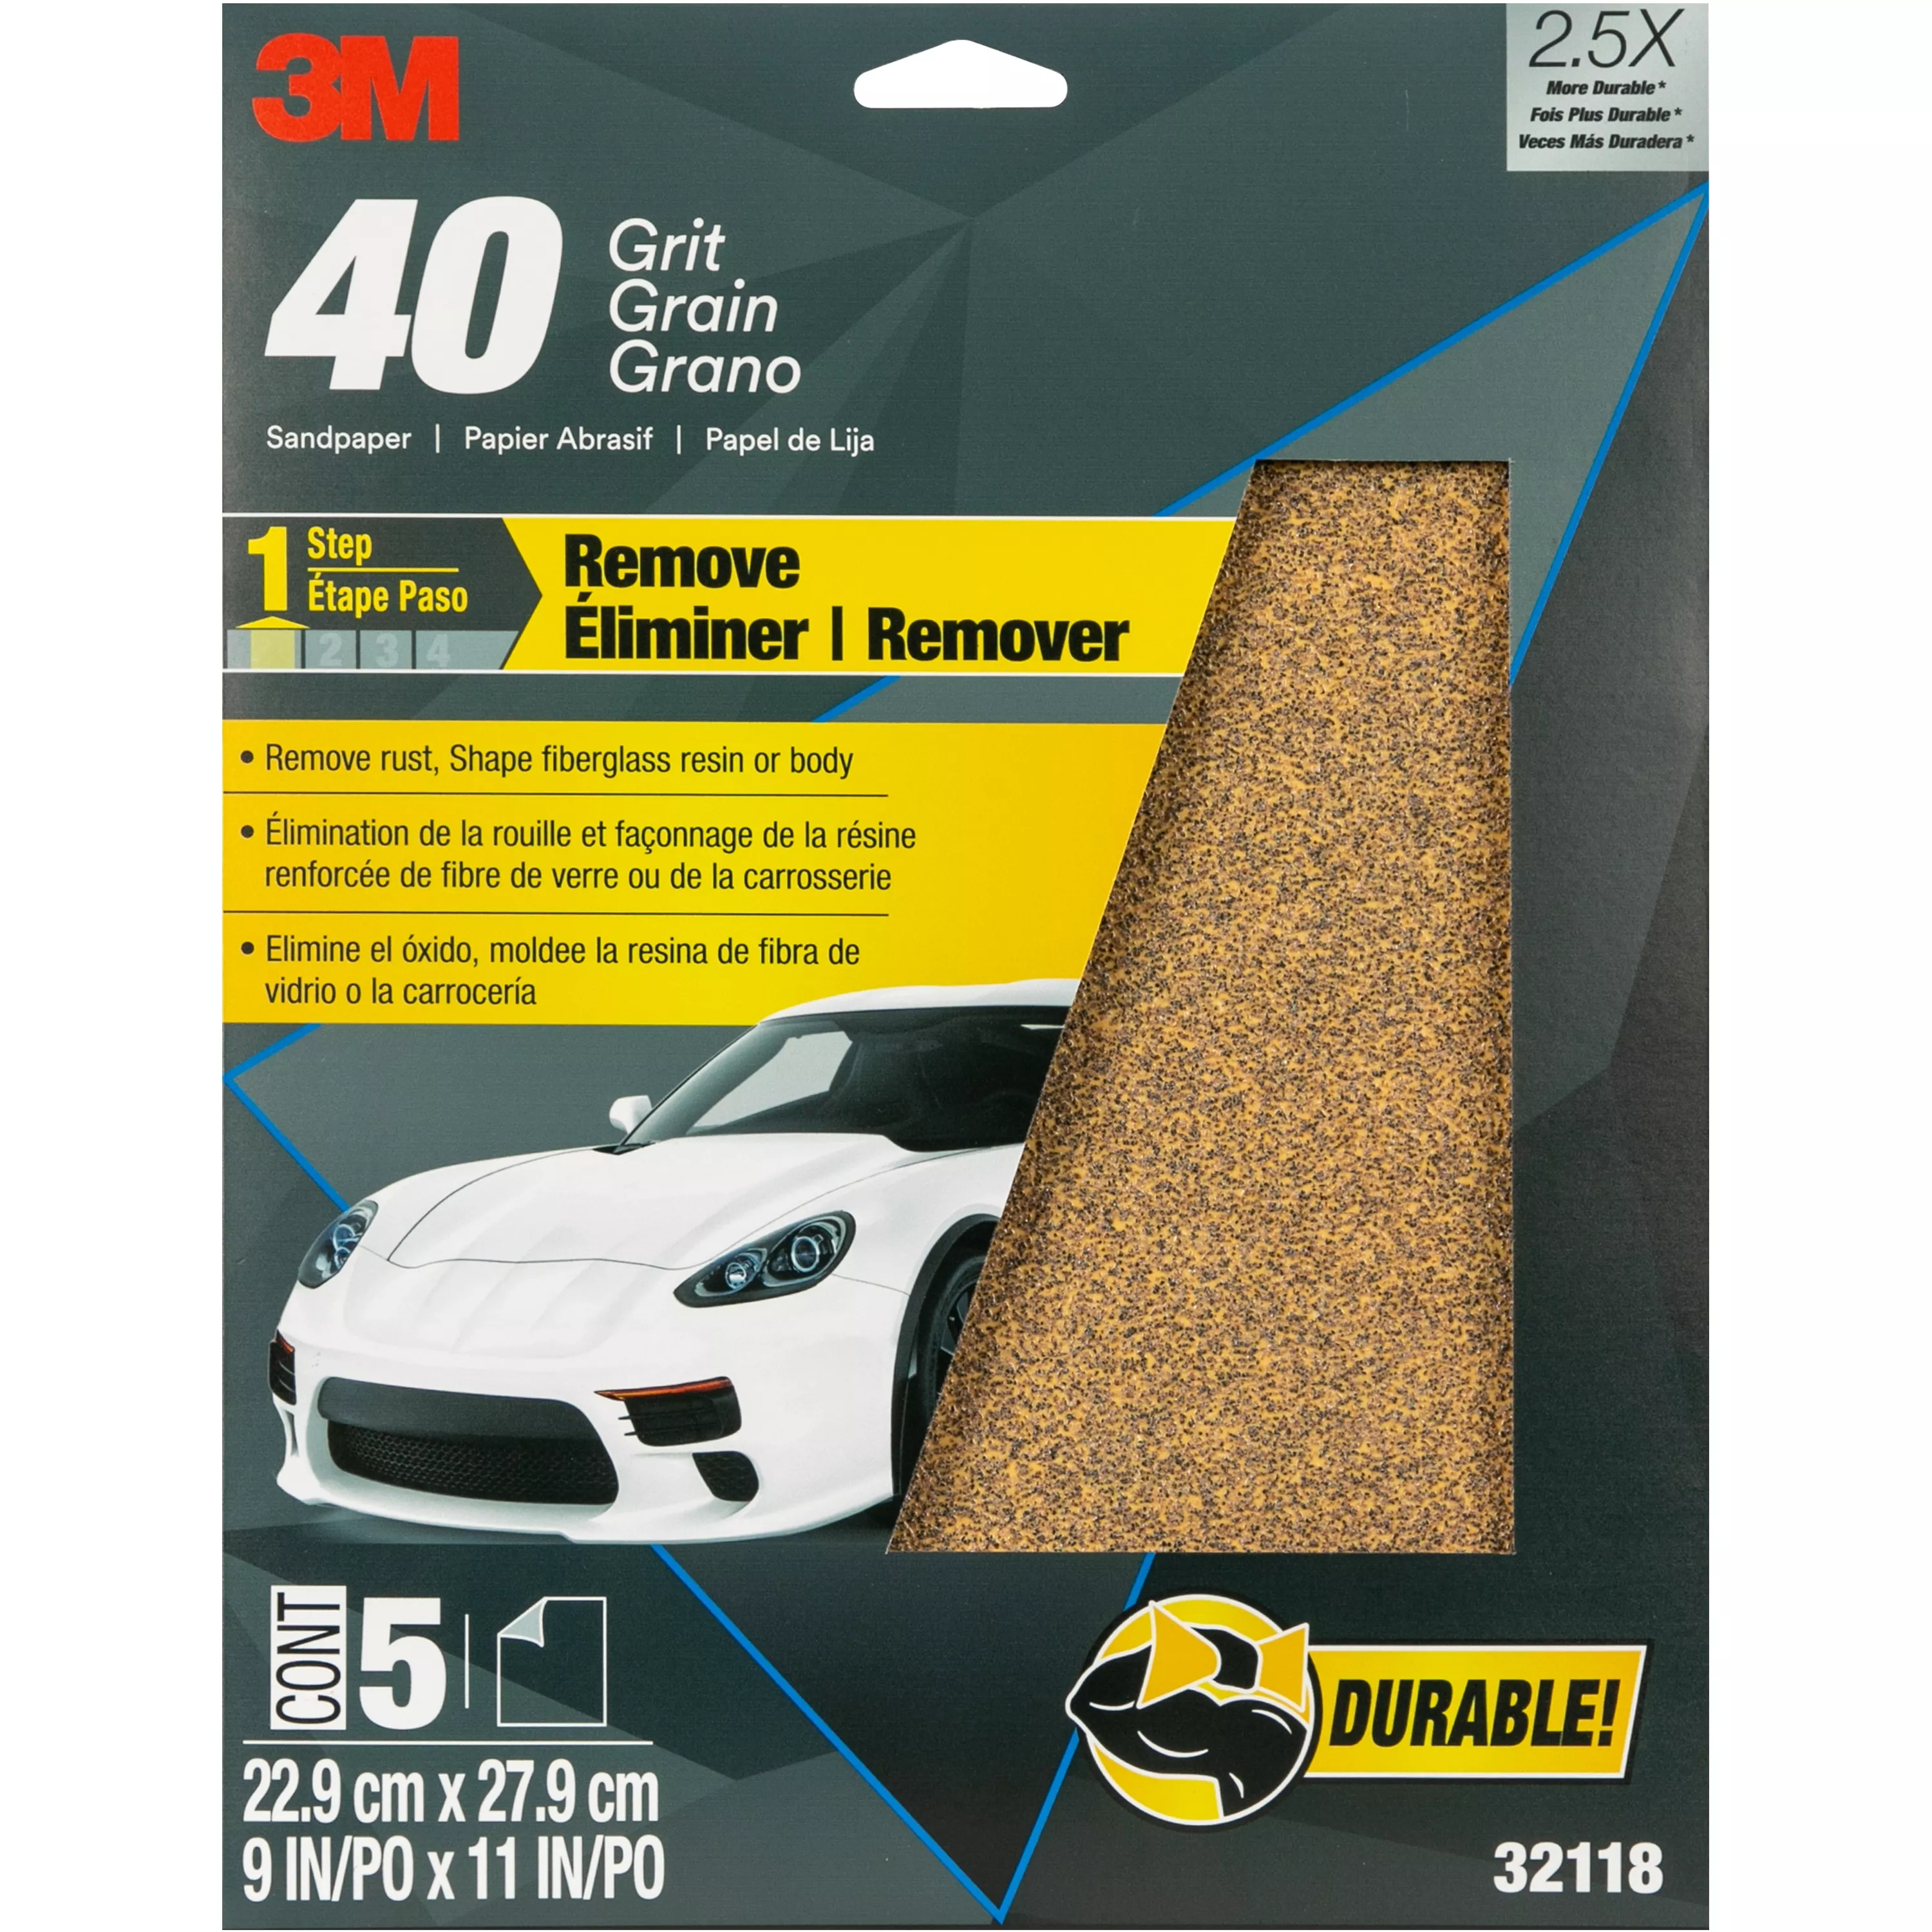 3M™ Sandpaper, 32118, 9 in x 11 in, 40 Grit, 5 sheets per pack, 20 packs
per case